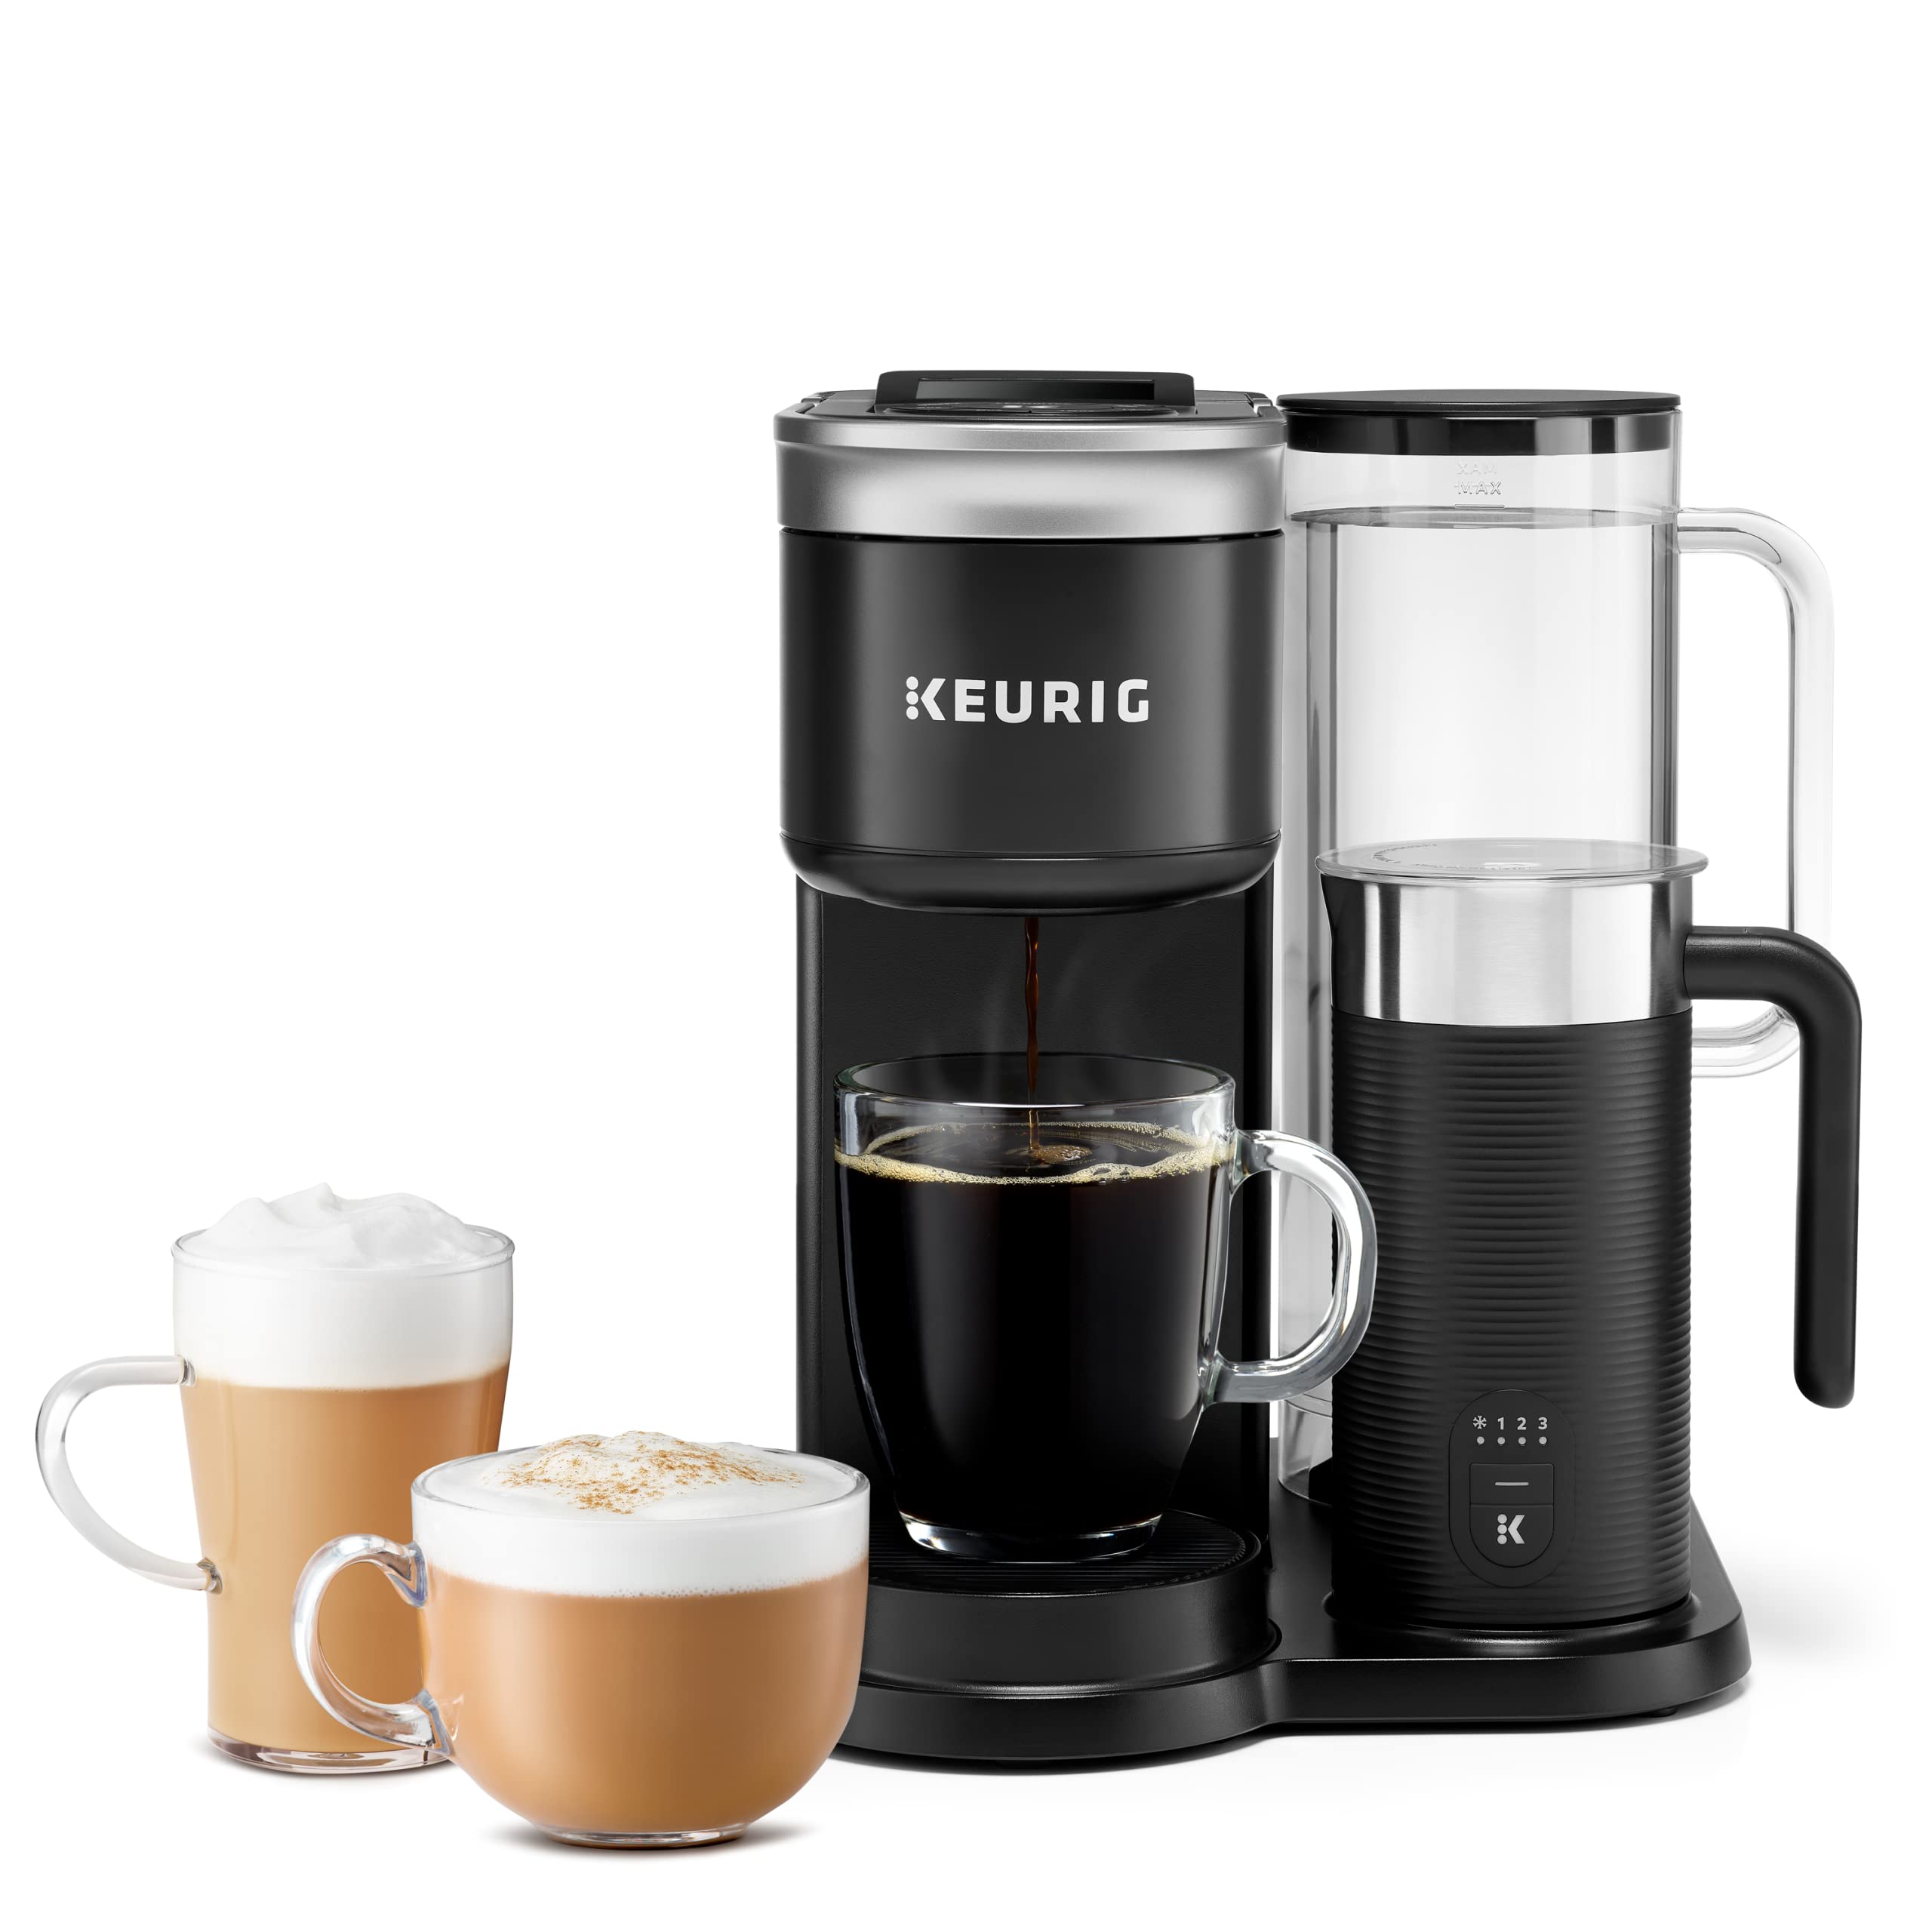 Keurig K-Duo シングルサーブ K カップ ポッド コーヒー、ラテ、カプチーノ メーカー